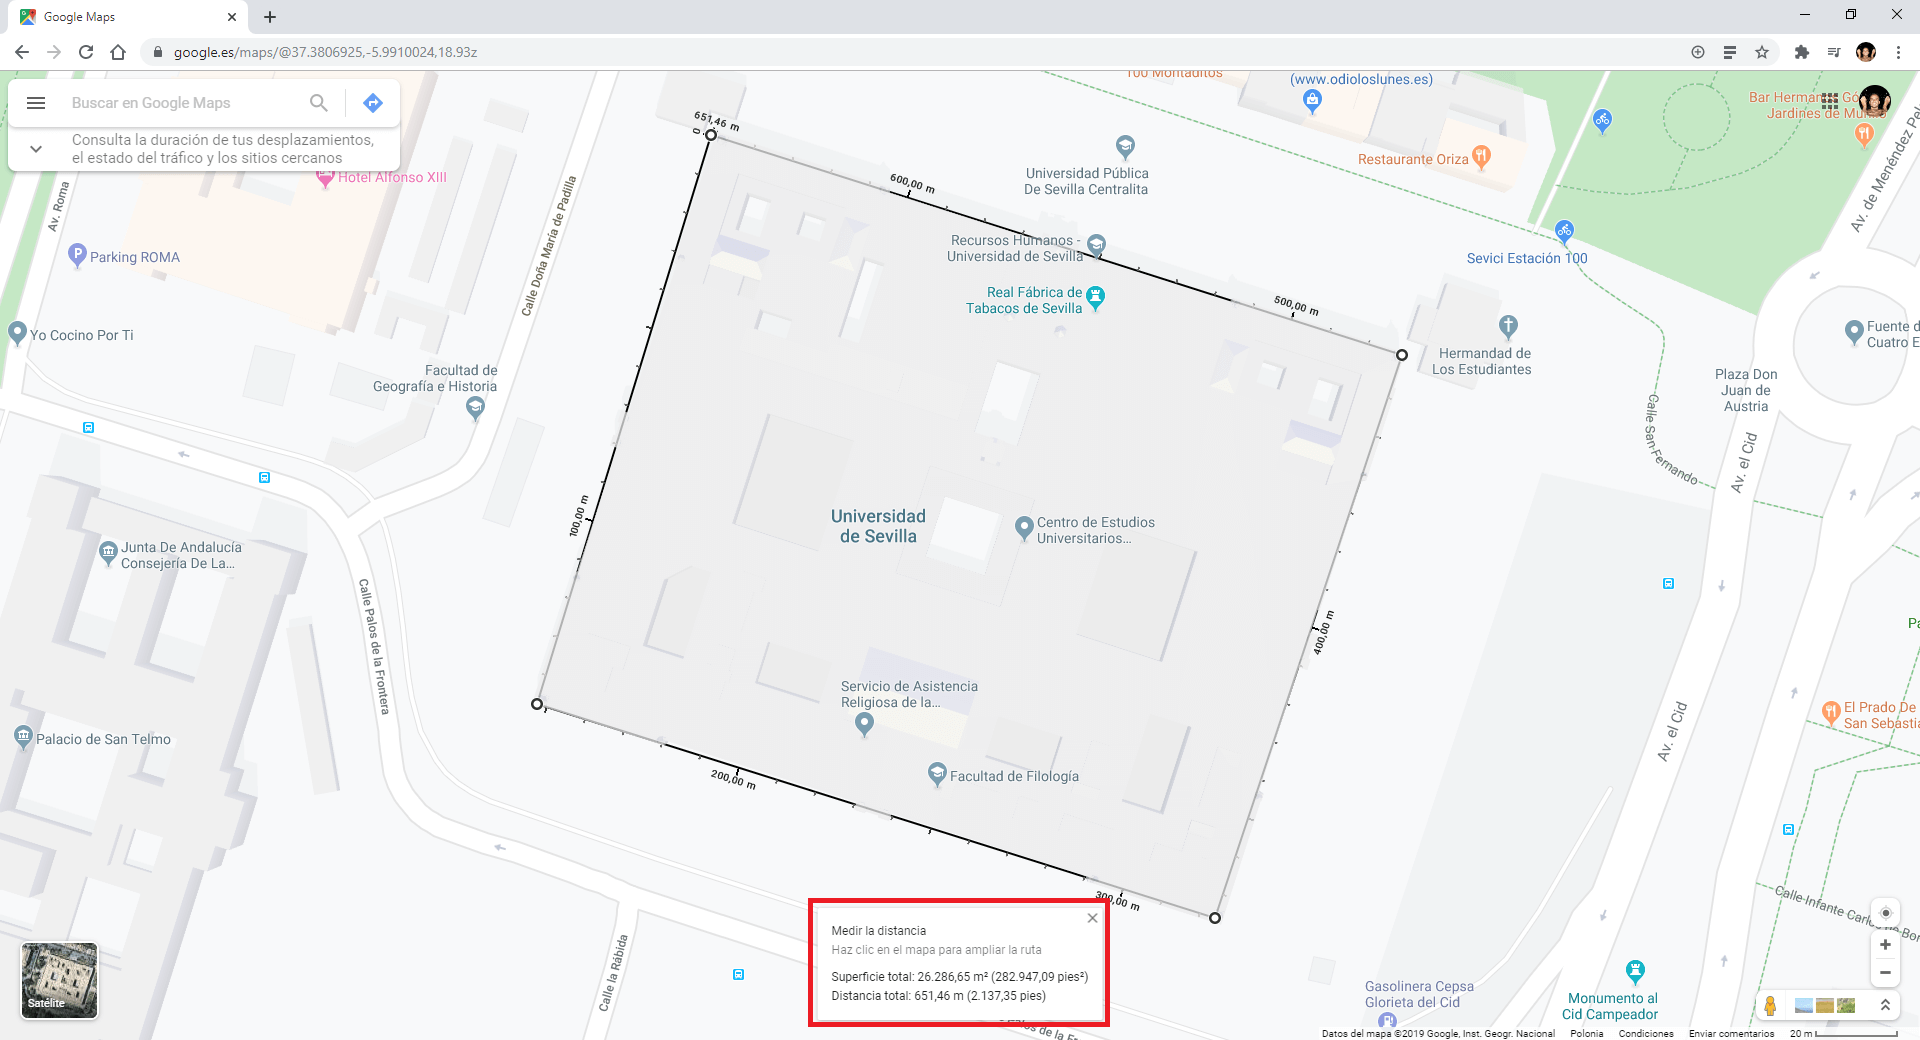 medir el area de una zona en metros cuadrados desde google maps